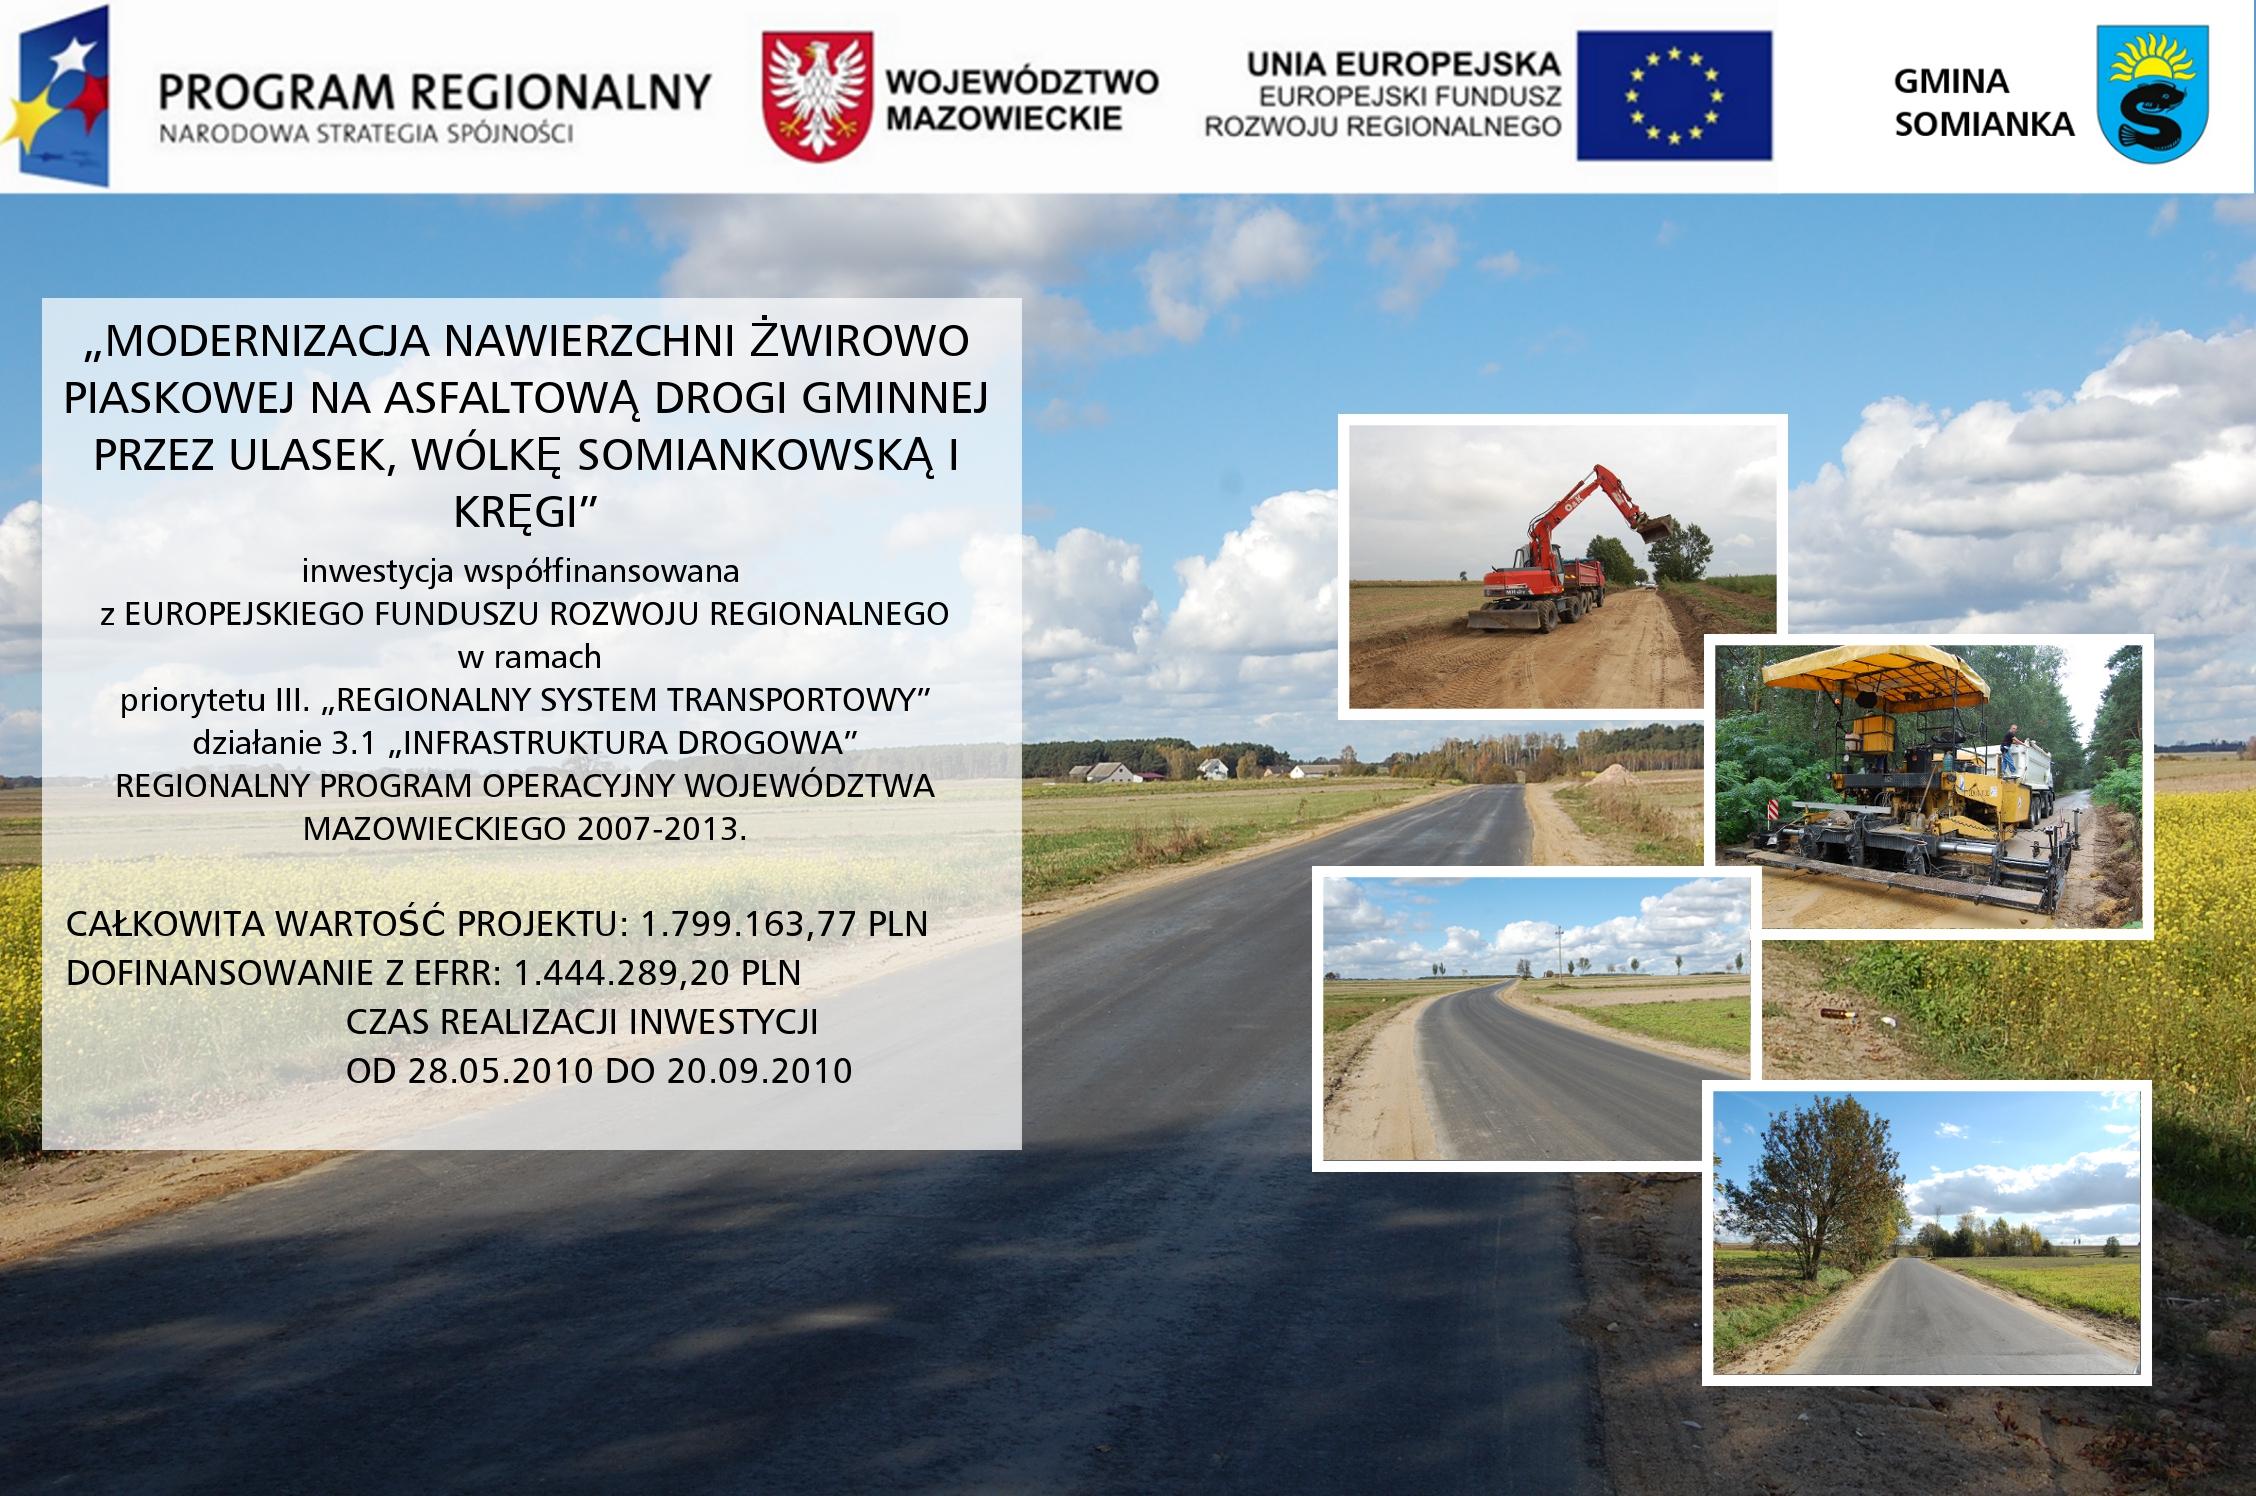 Modernizacja nawierzchni żwirowo piaskowej na asfaltową drogi gminnej relacji Ulasek Wólka